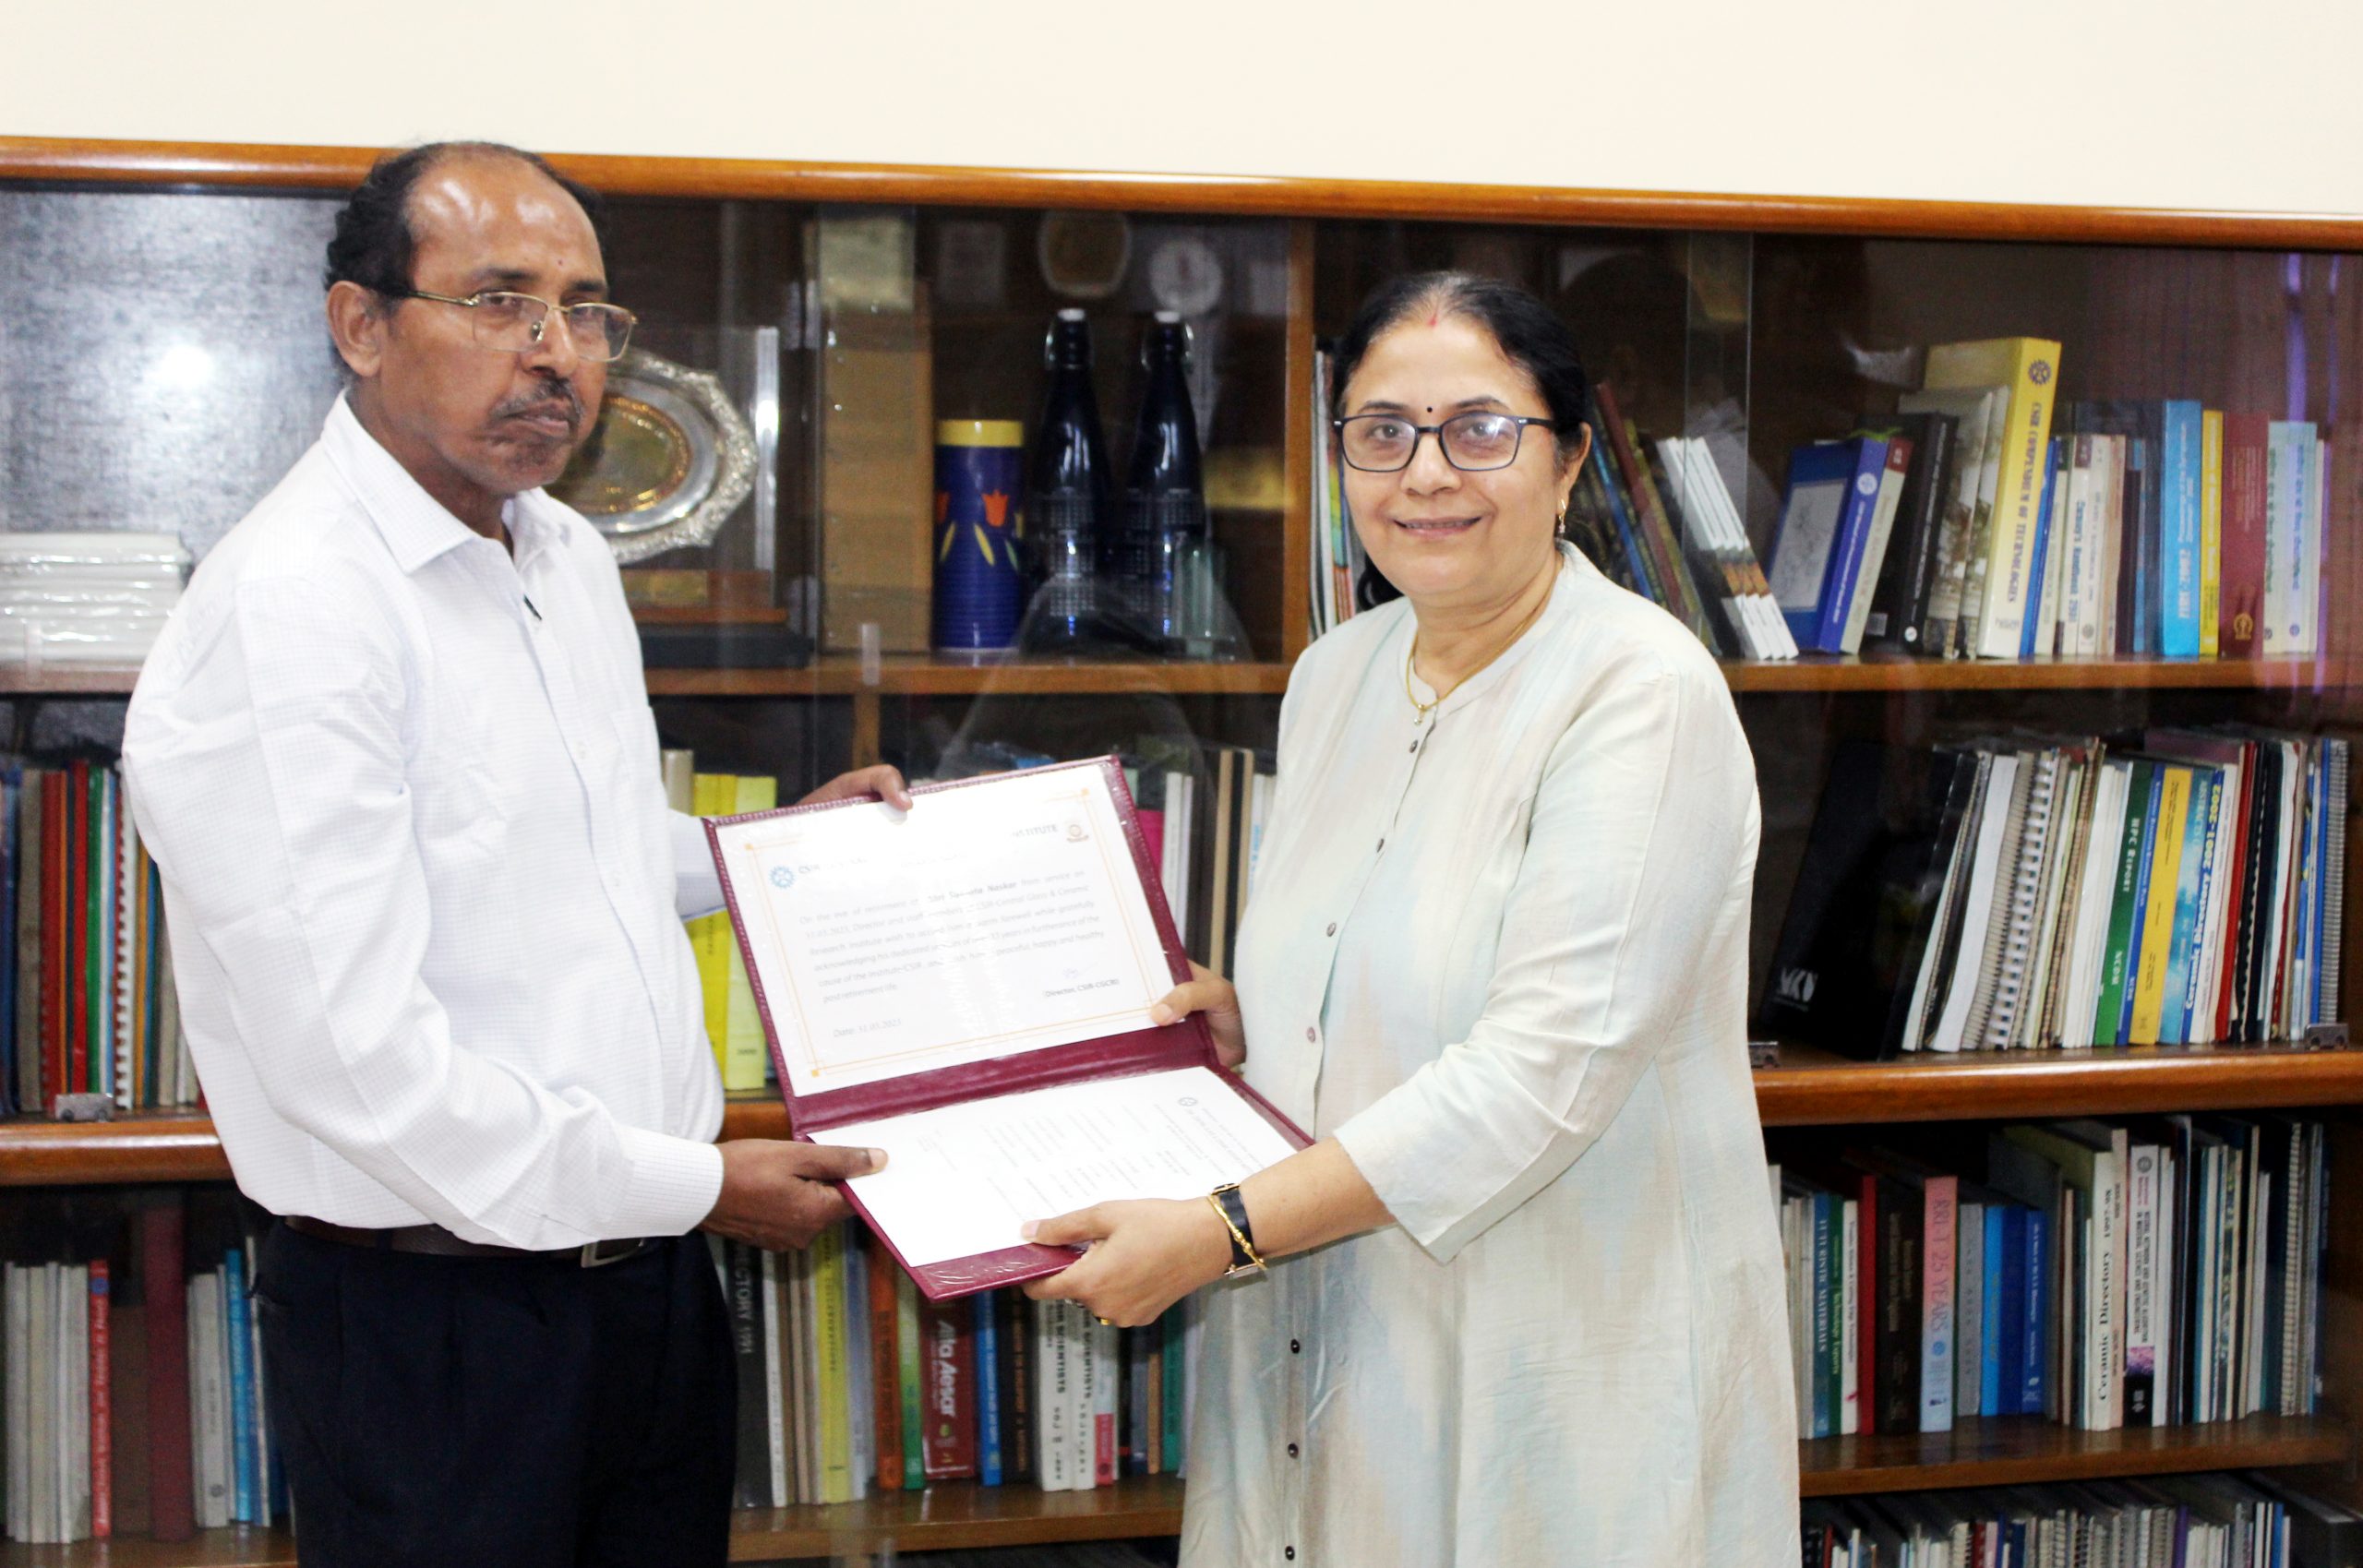 Director presenting retirement certificate to Sri Susanta Naskar